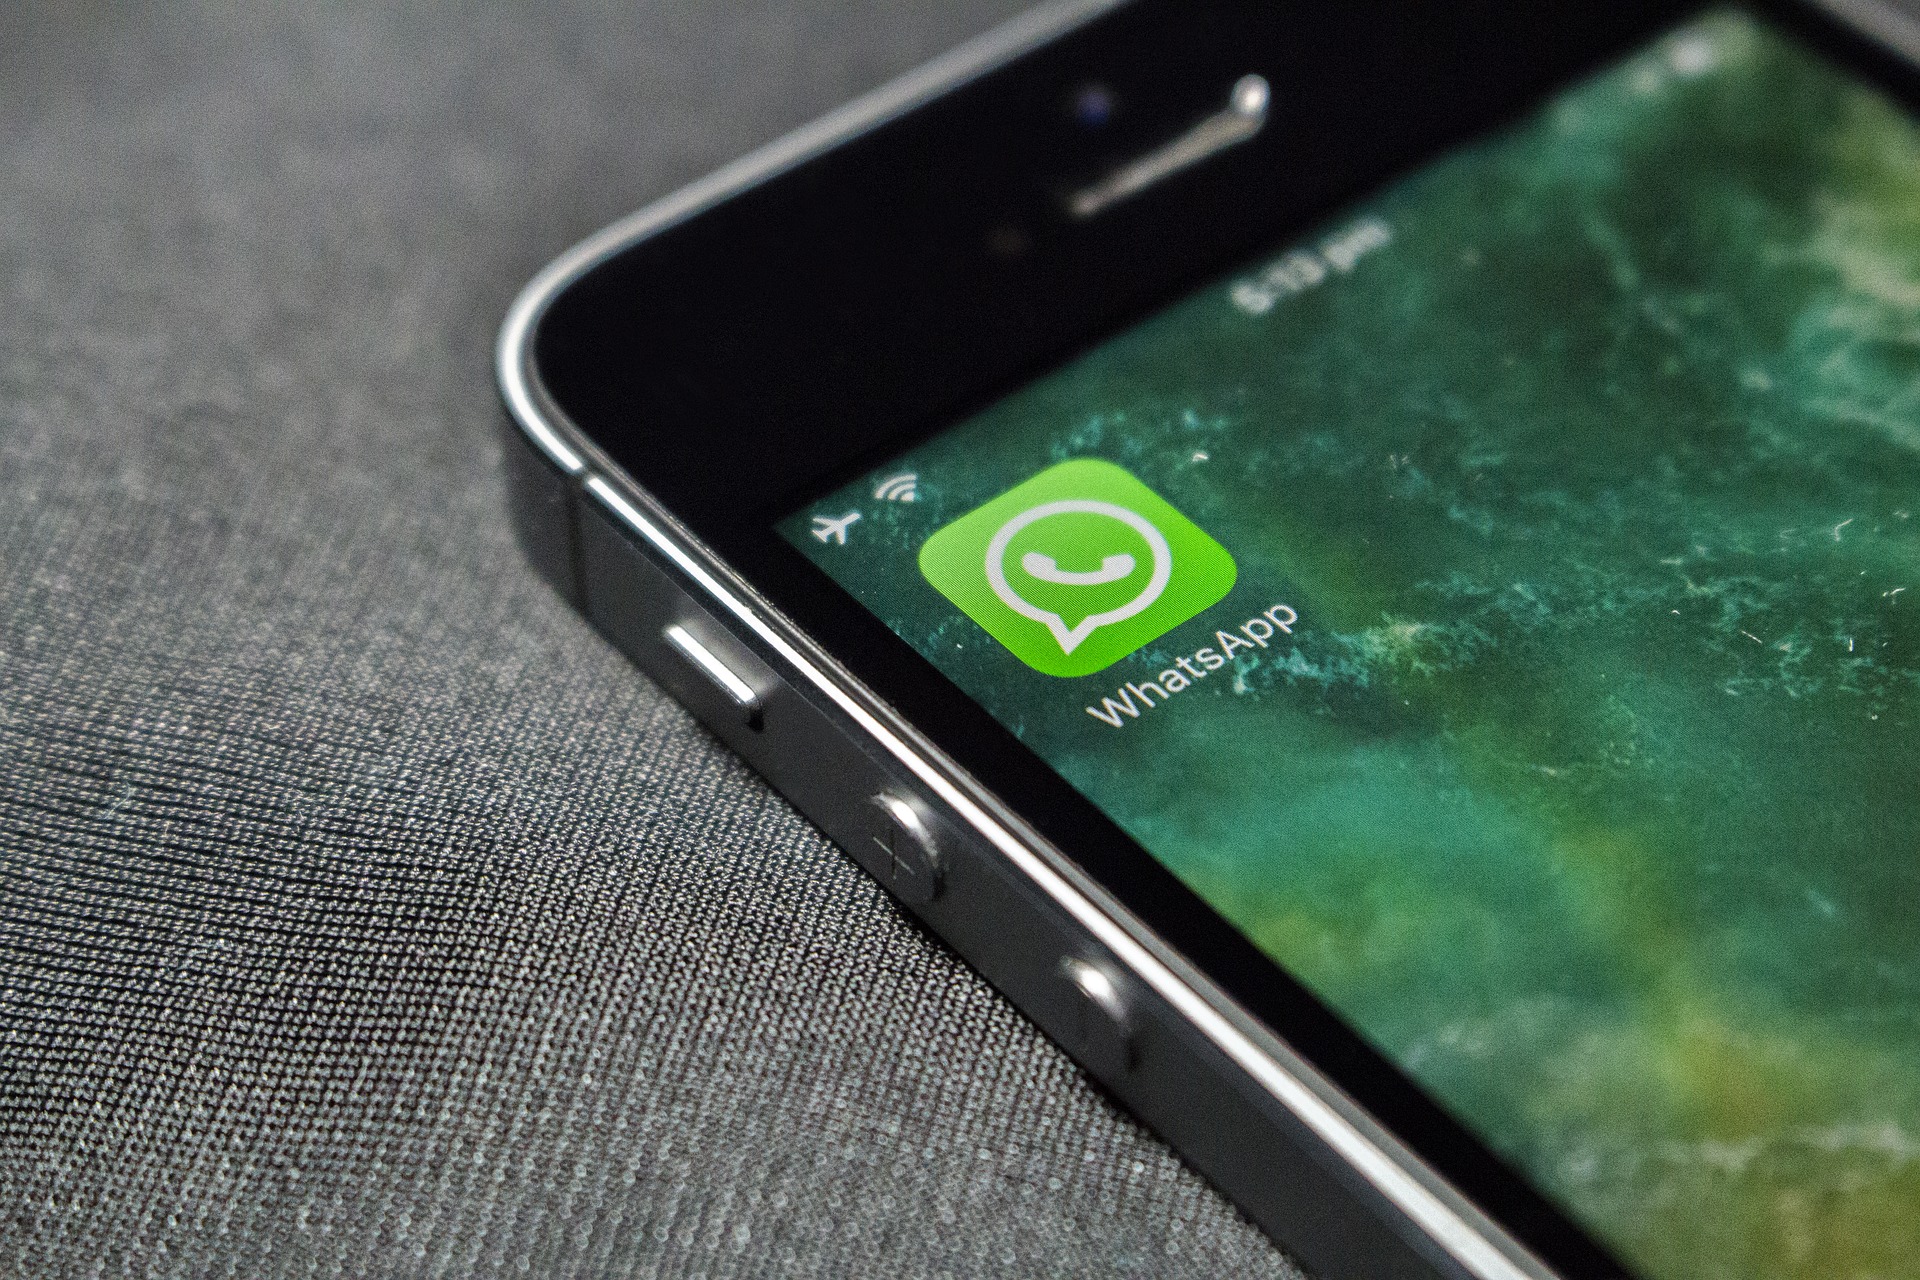  WhatsApp va limiter le nombre de destinataires pour les transferts afin de lutter contre la désinformation